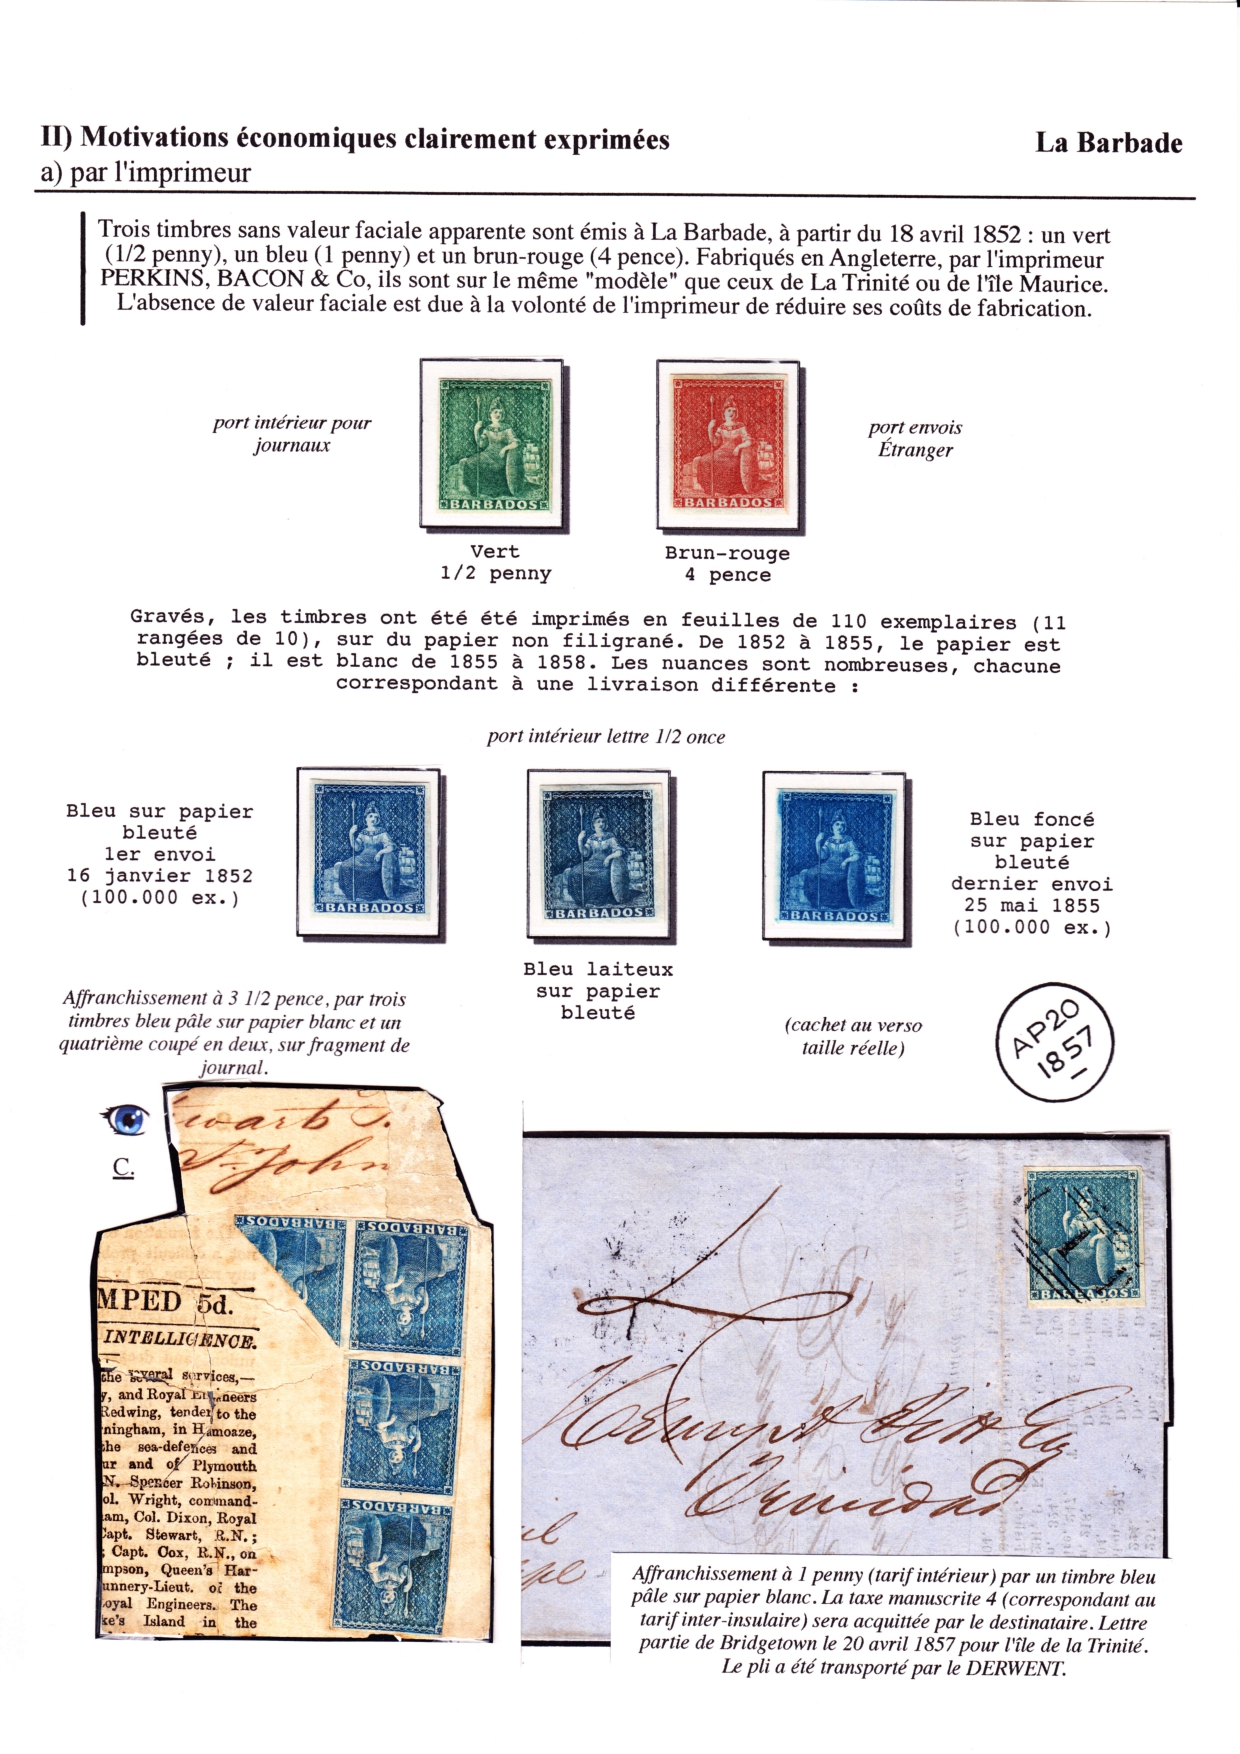 Les d������buts des timbres sans valeur faciale apparente p. 31